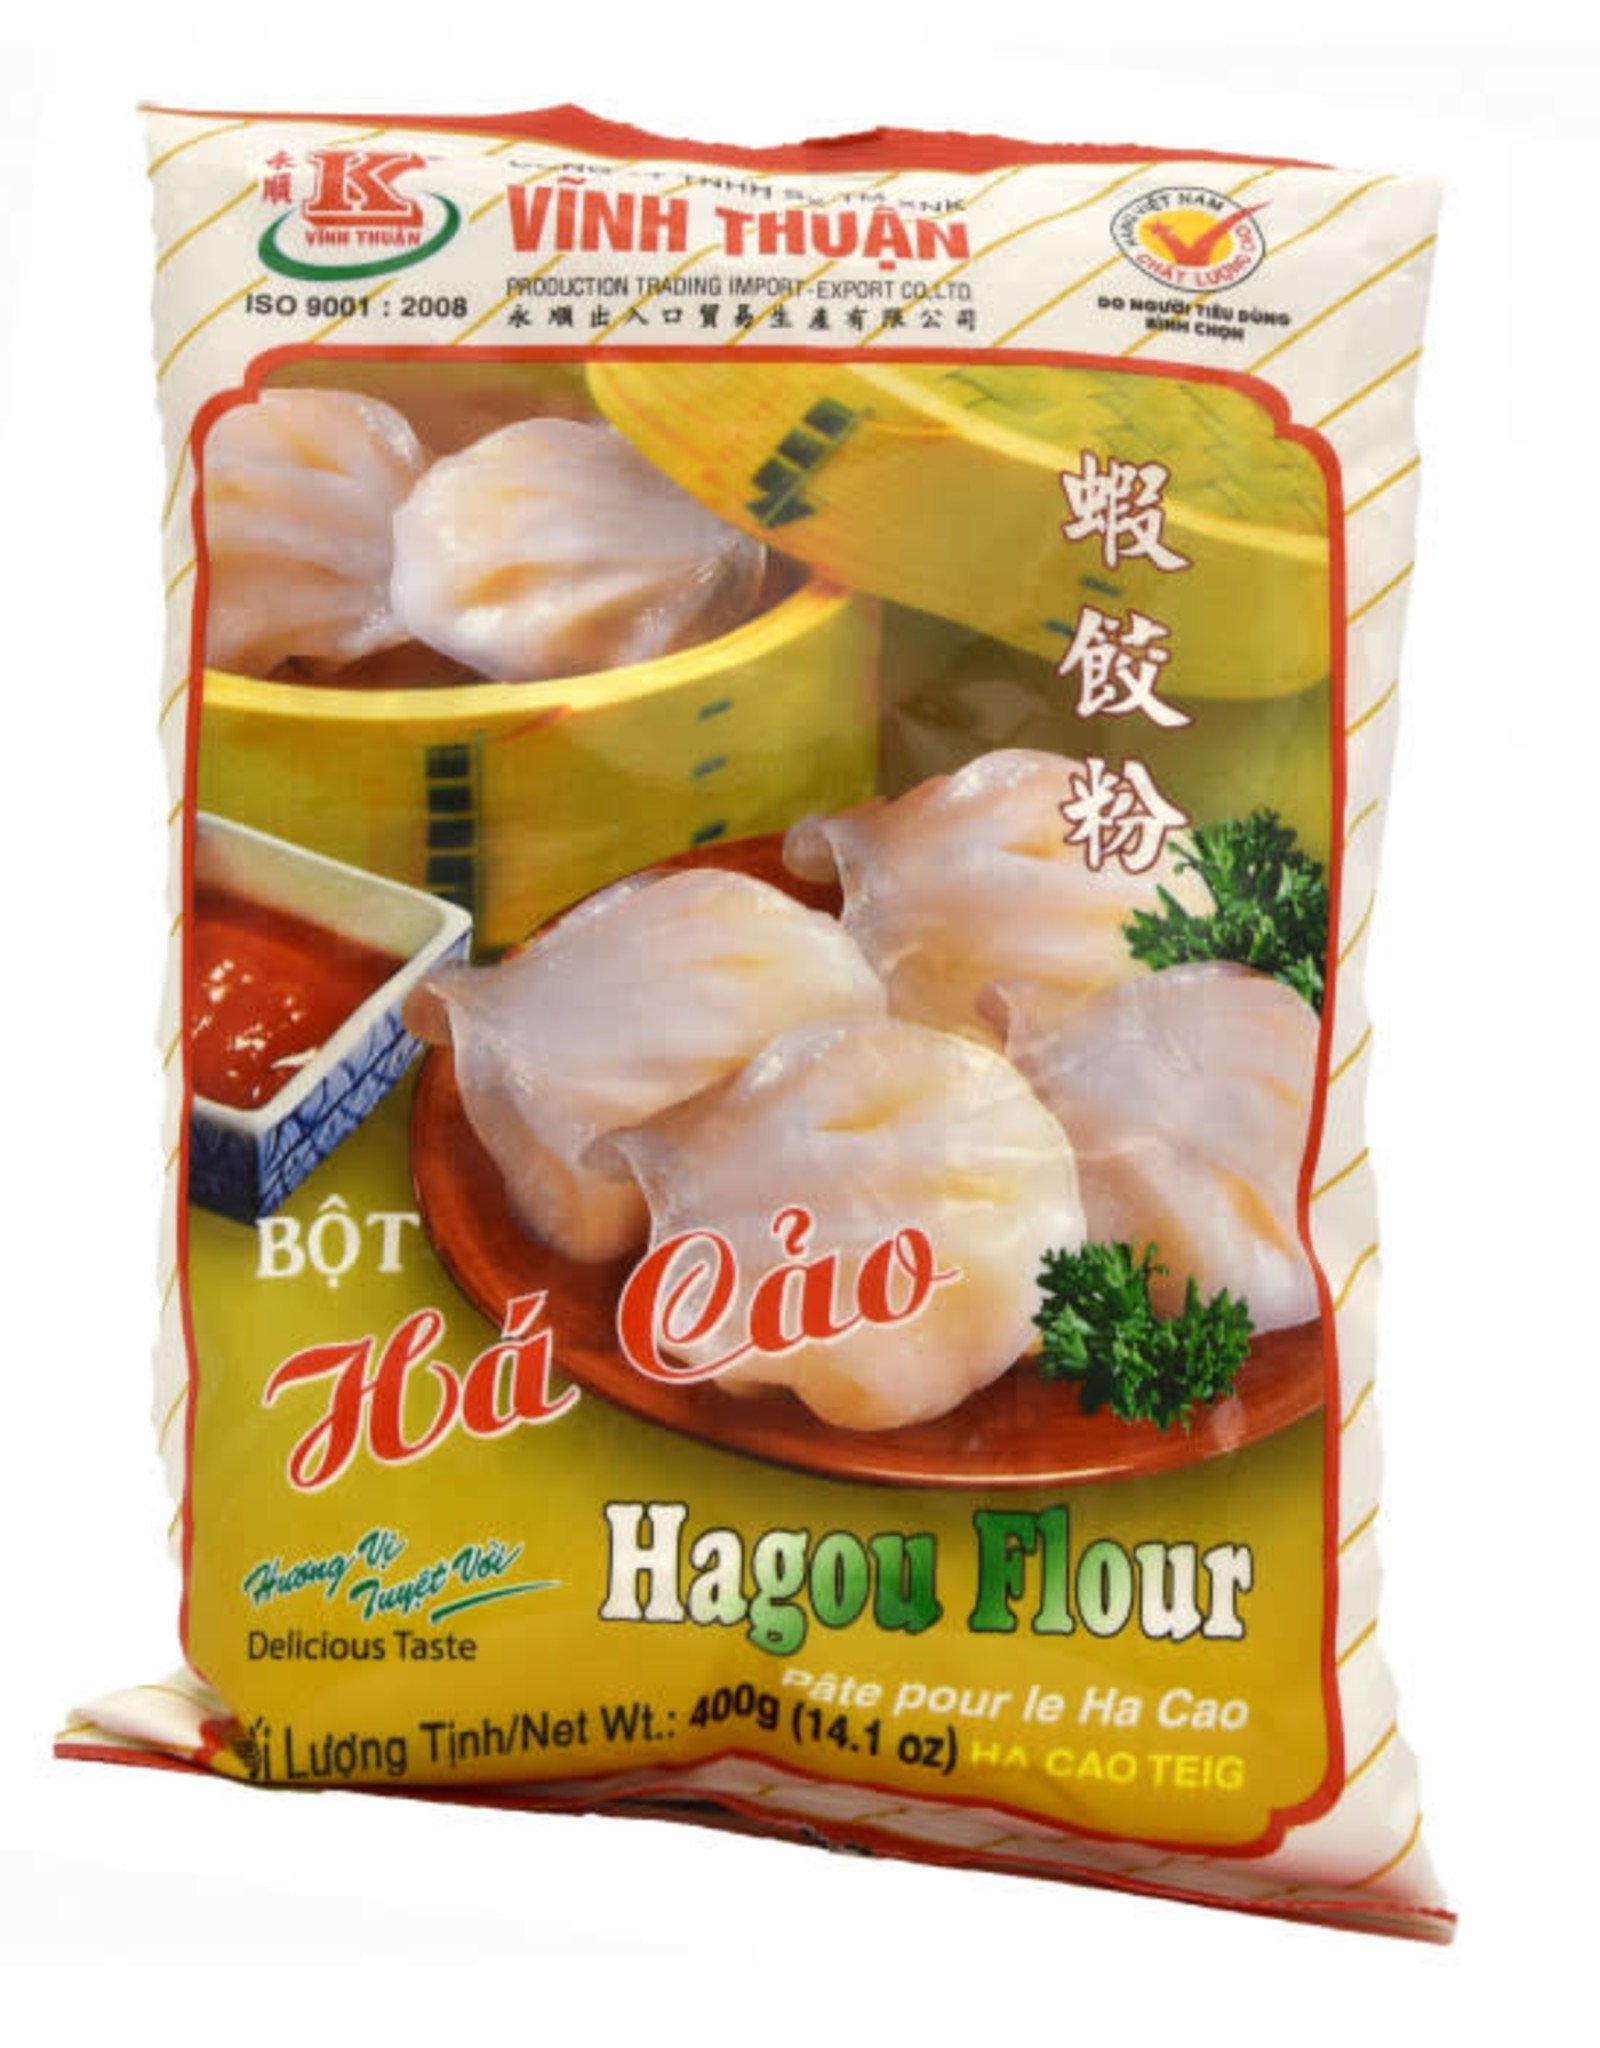 Vt Rice Flour "Ha Cao" 400Gr